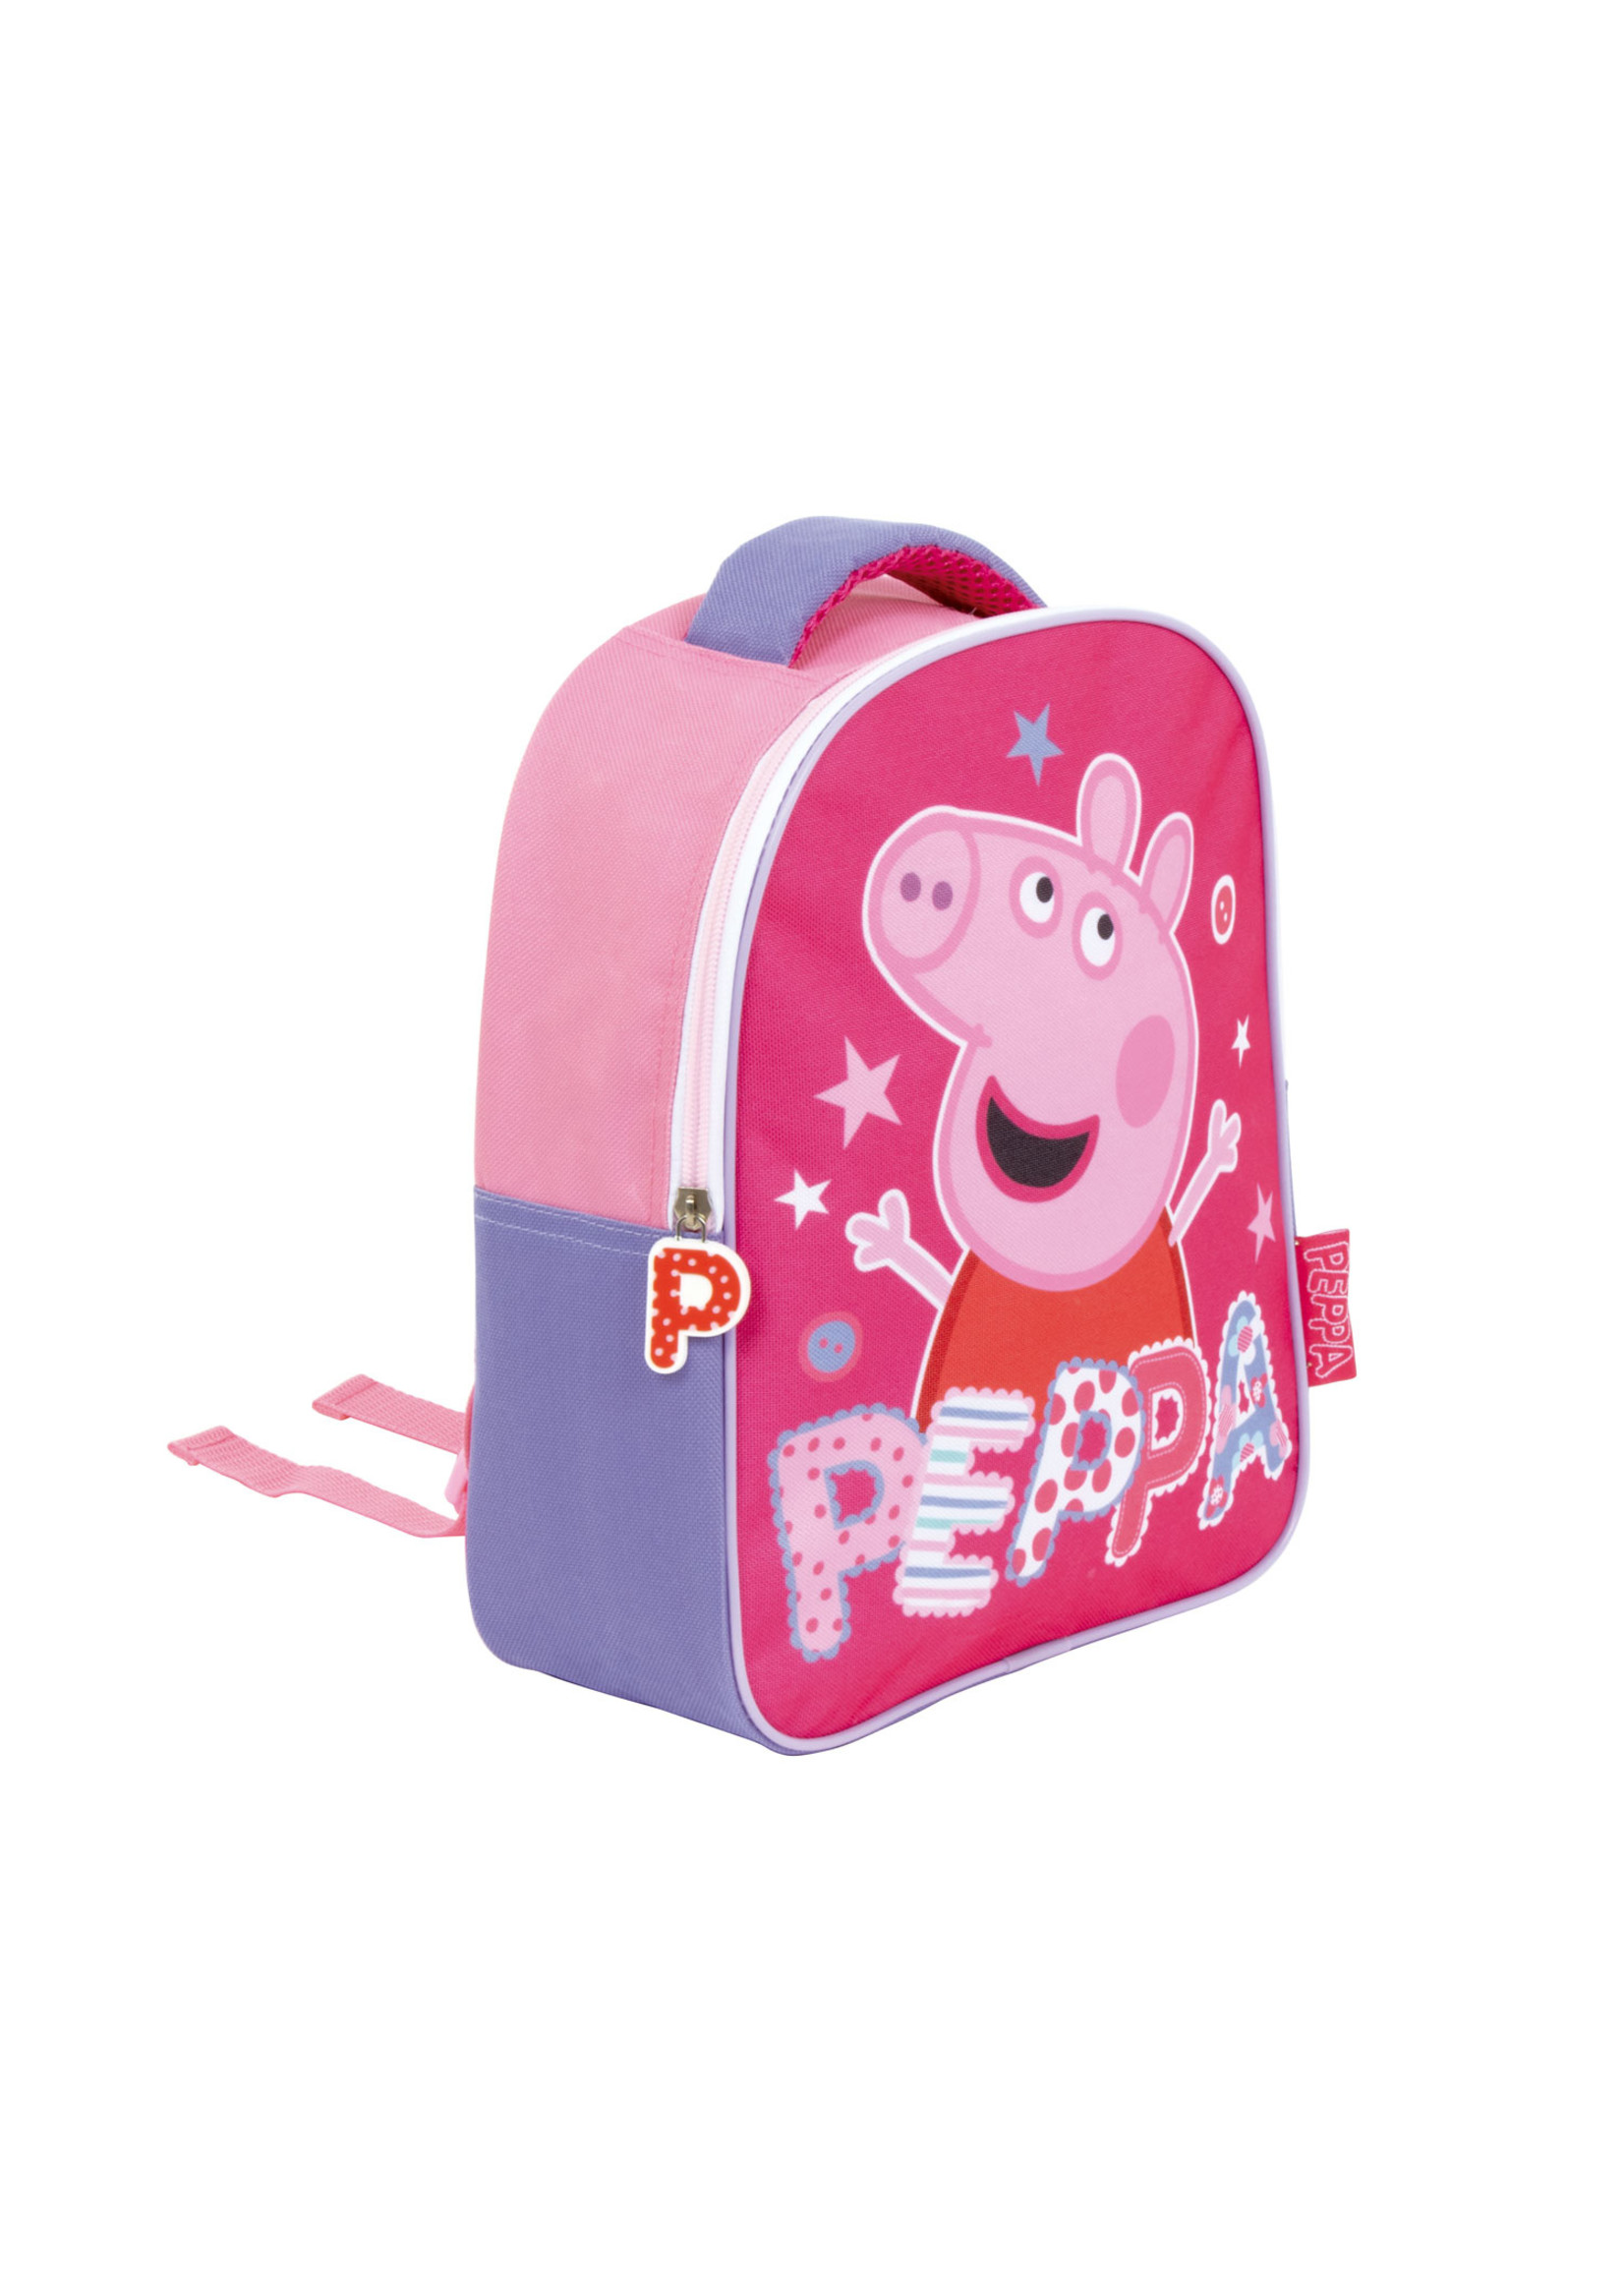 Peppa Pig  Peppa Pig backpack from Peppa Pig pink